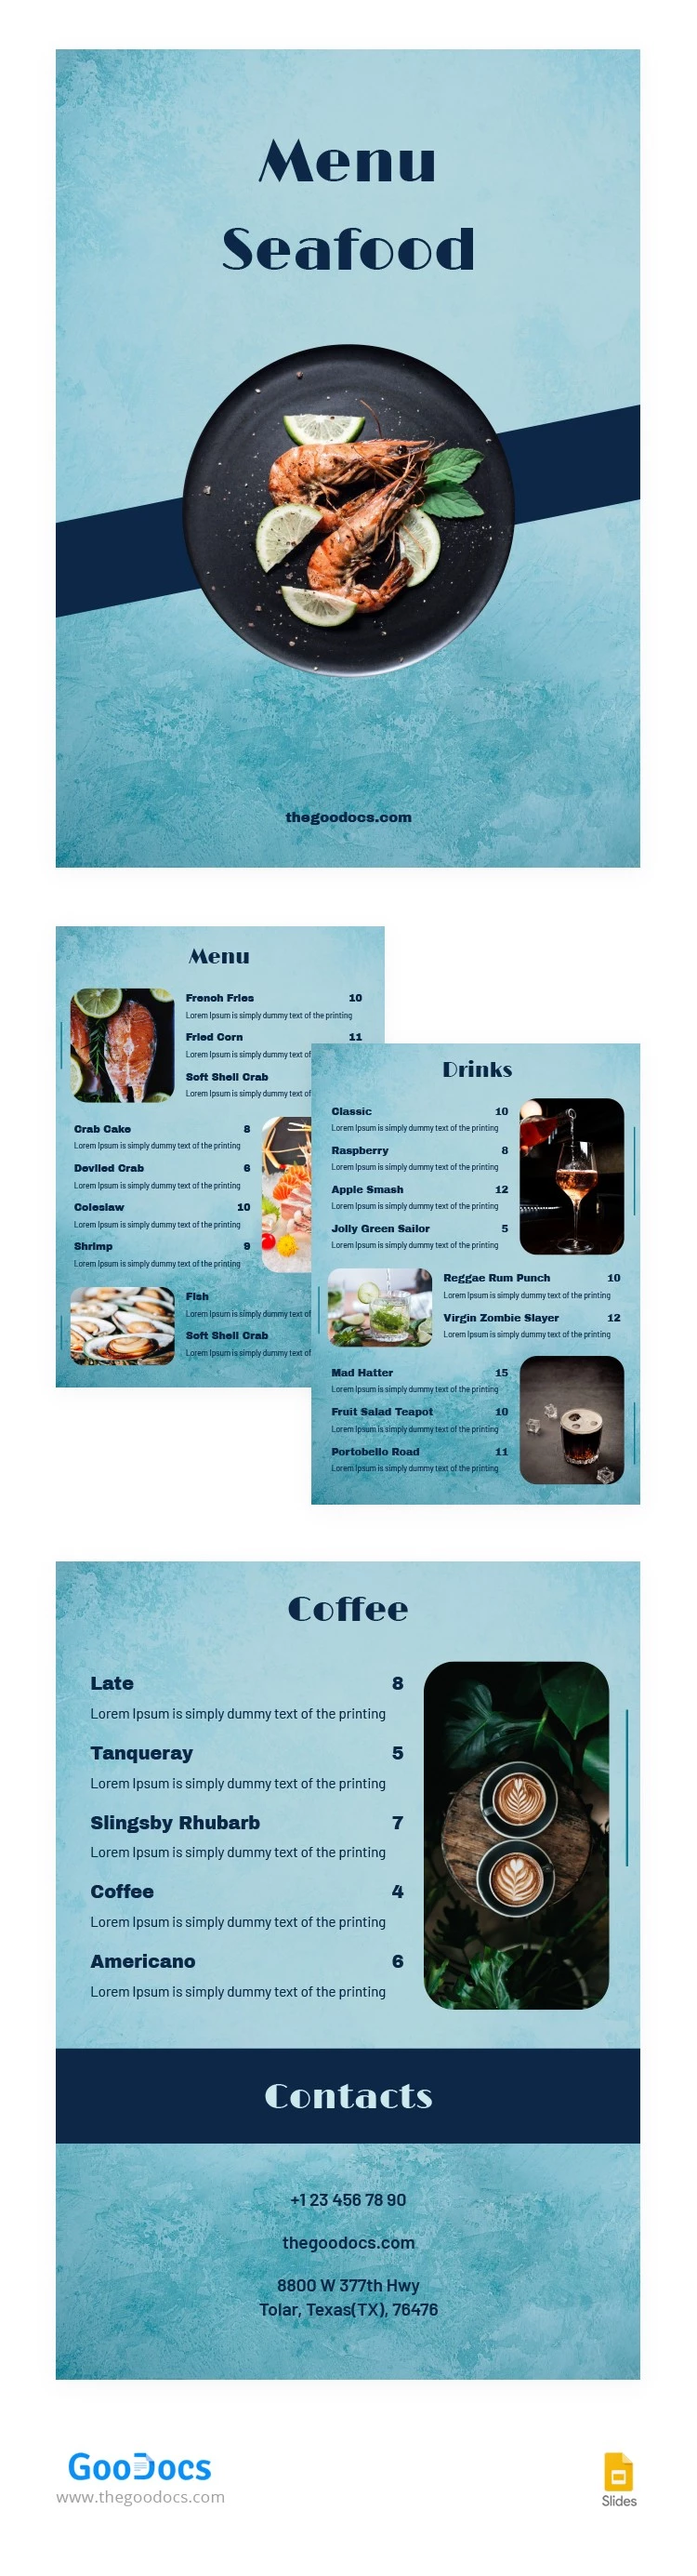 Menú de restaurante elegante Mariscos - free Google Docs Template - 10065015